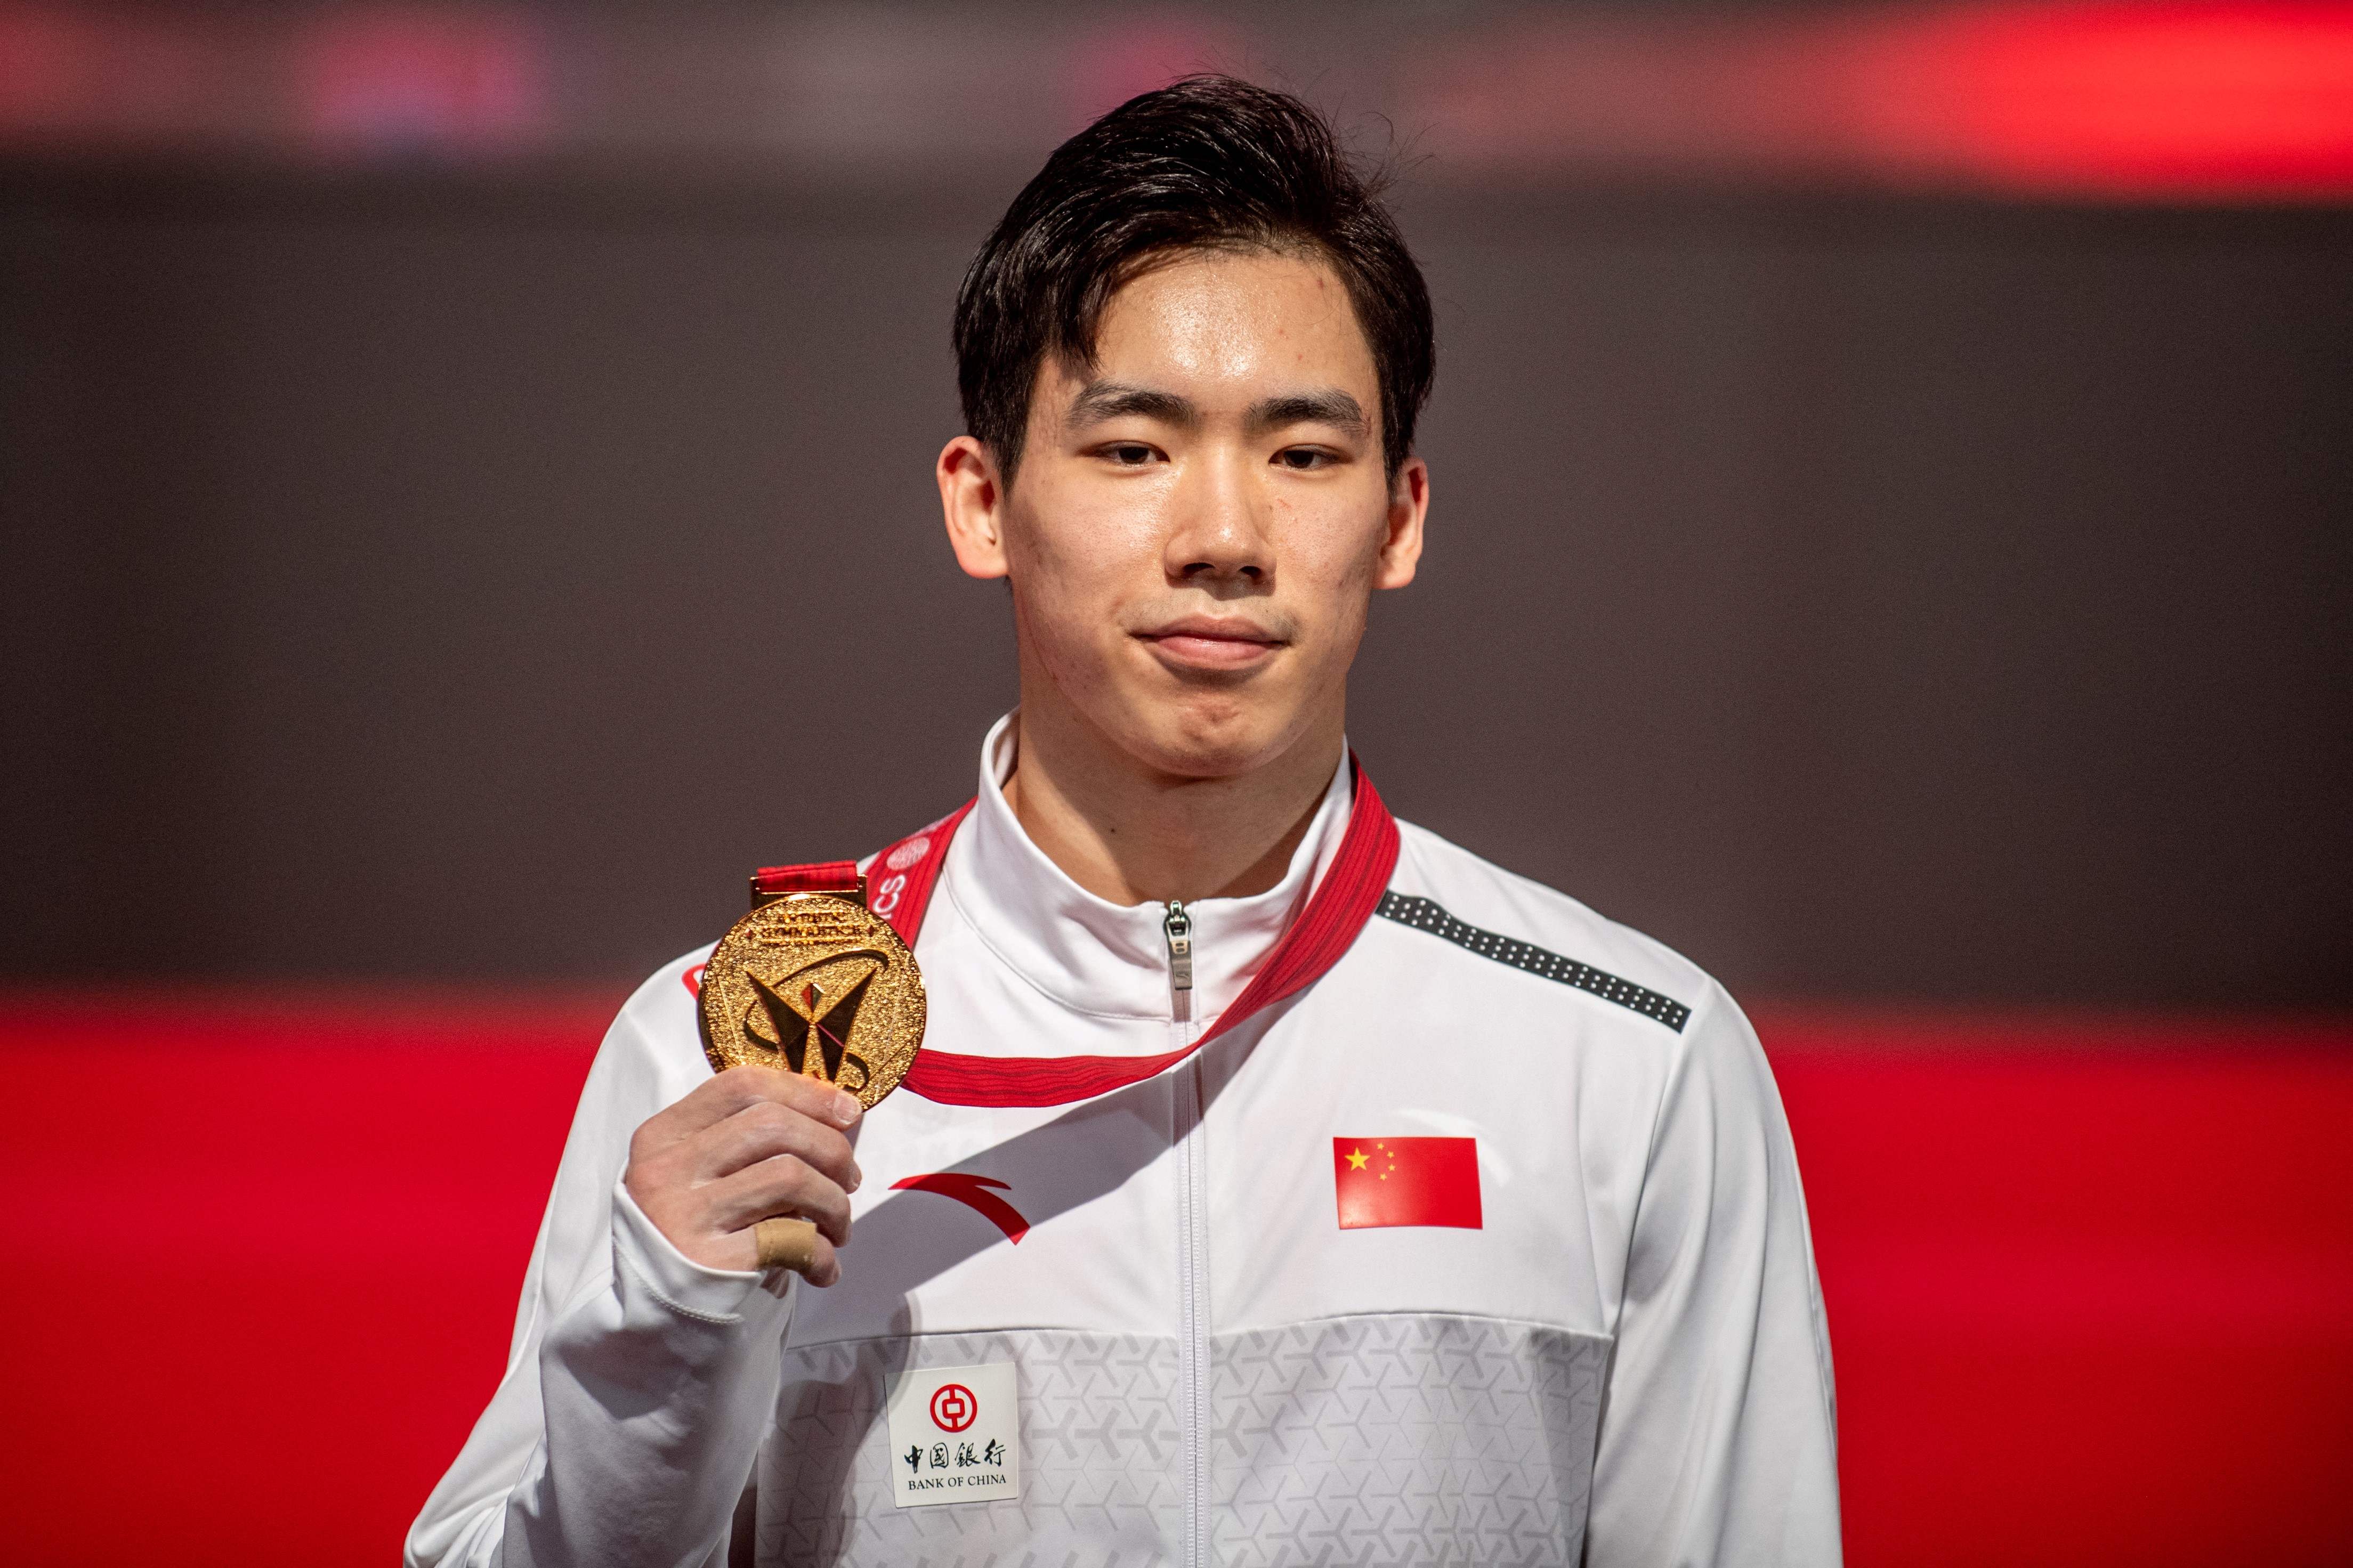 张博恒成为中国历史上第6位世锦赛全能冠军。